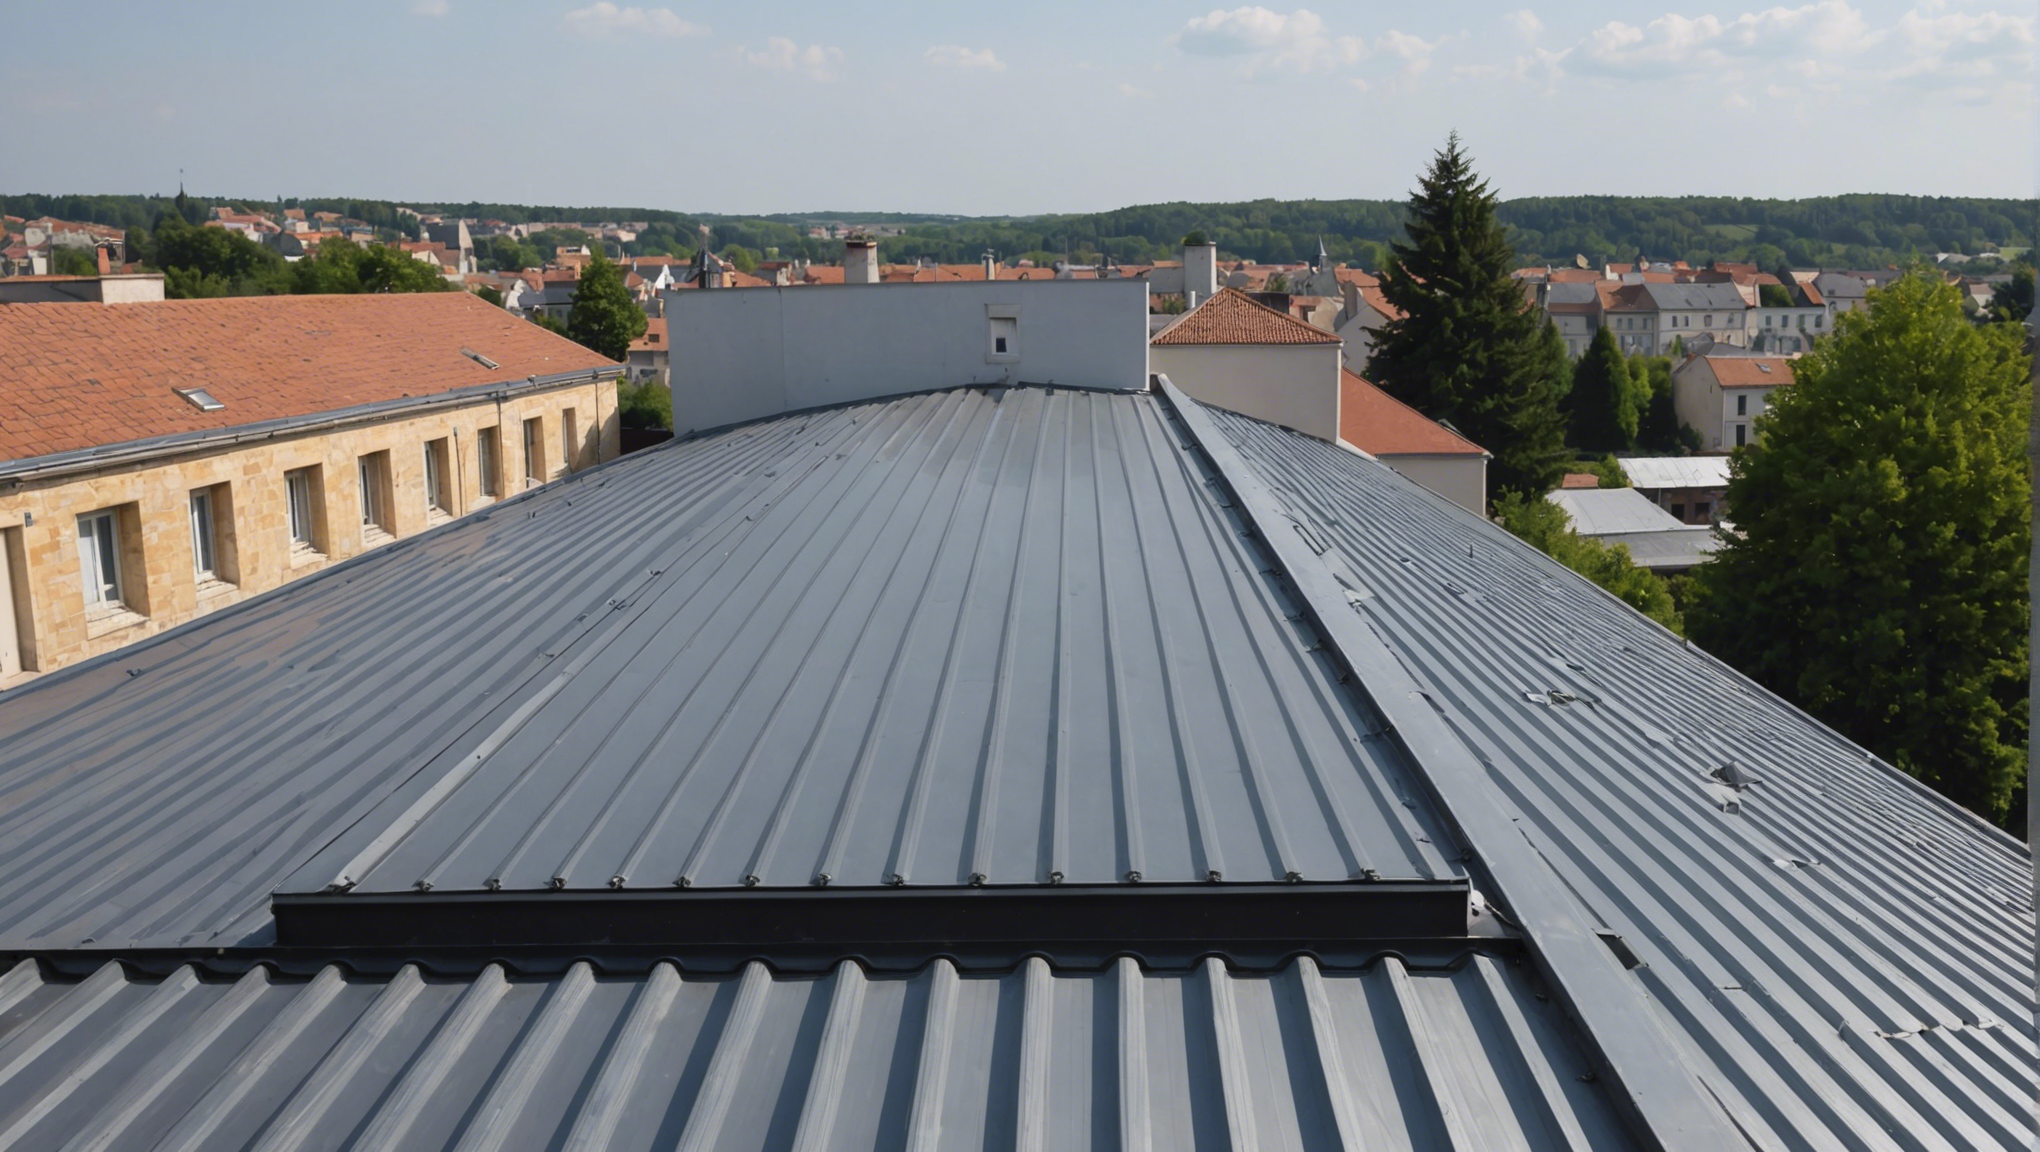 découvrez les avantages de choisir une toiture en bac acier isolé pour votre maison ou bâtiment. isolation, durabilité et esthétique : tous les avantages expliqués dans cet article.